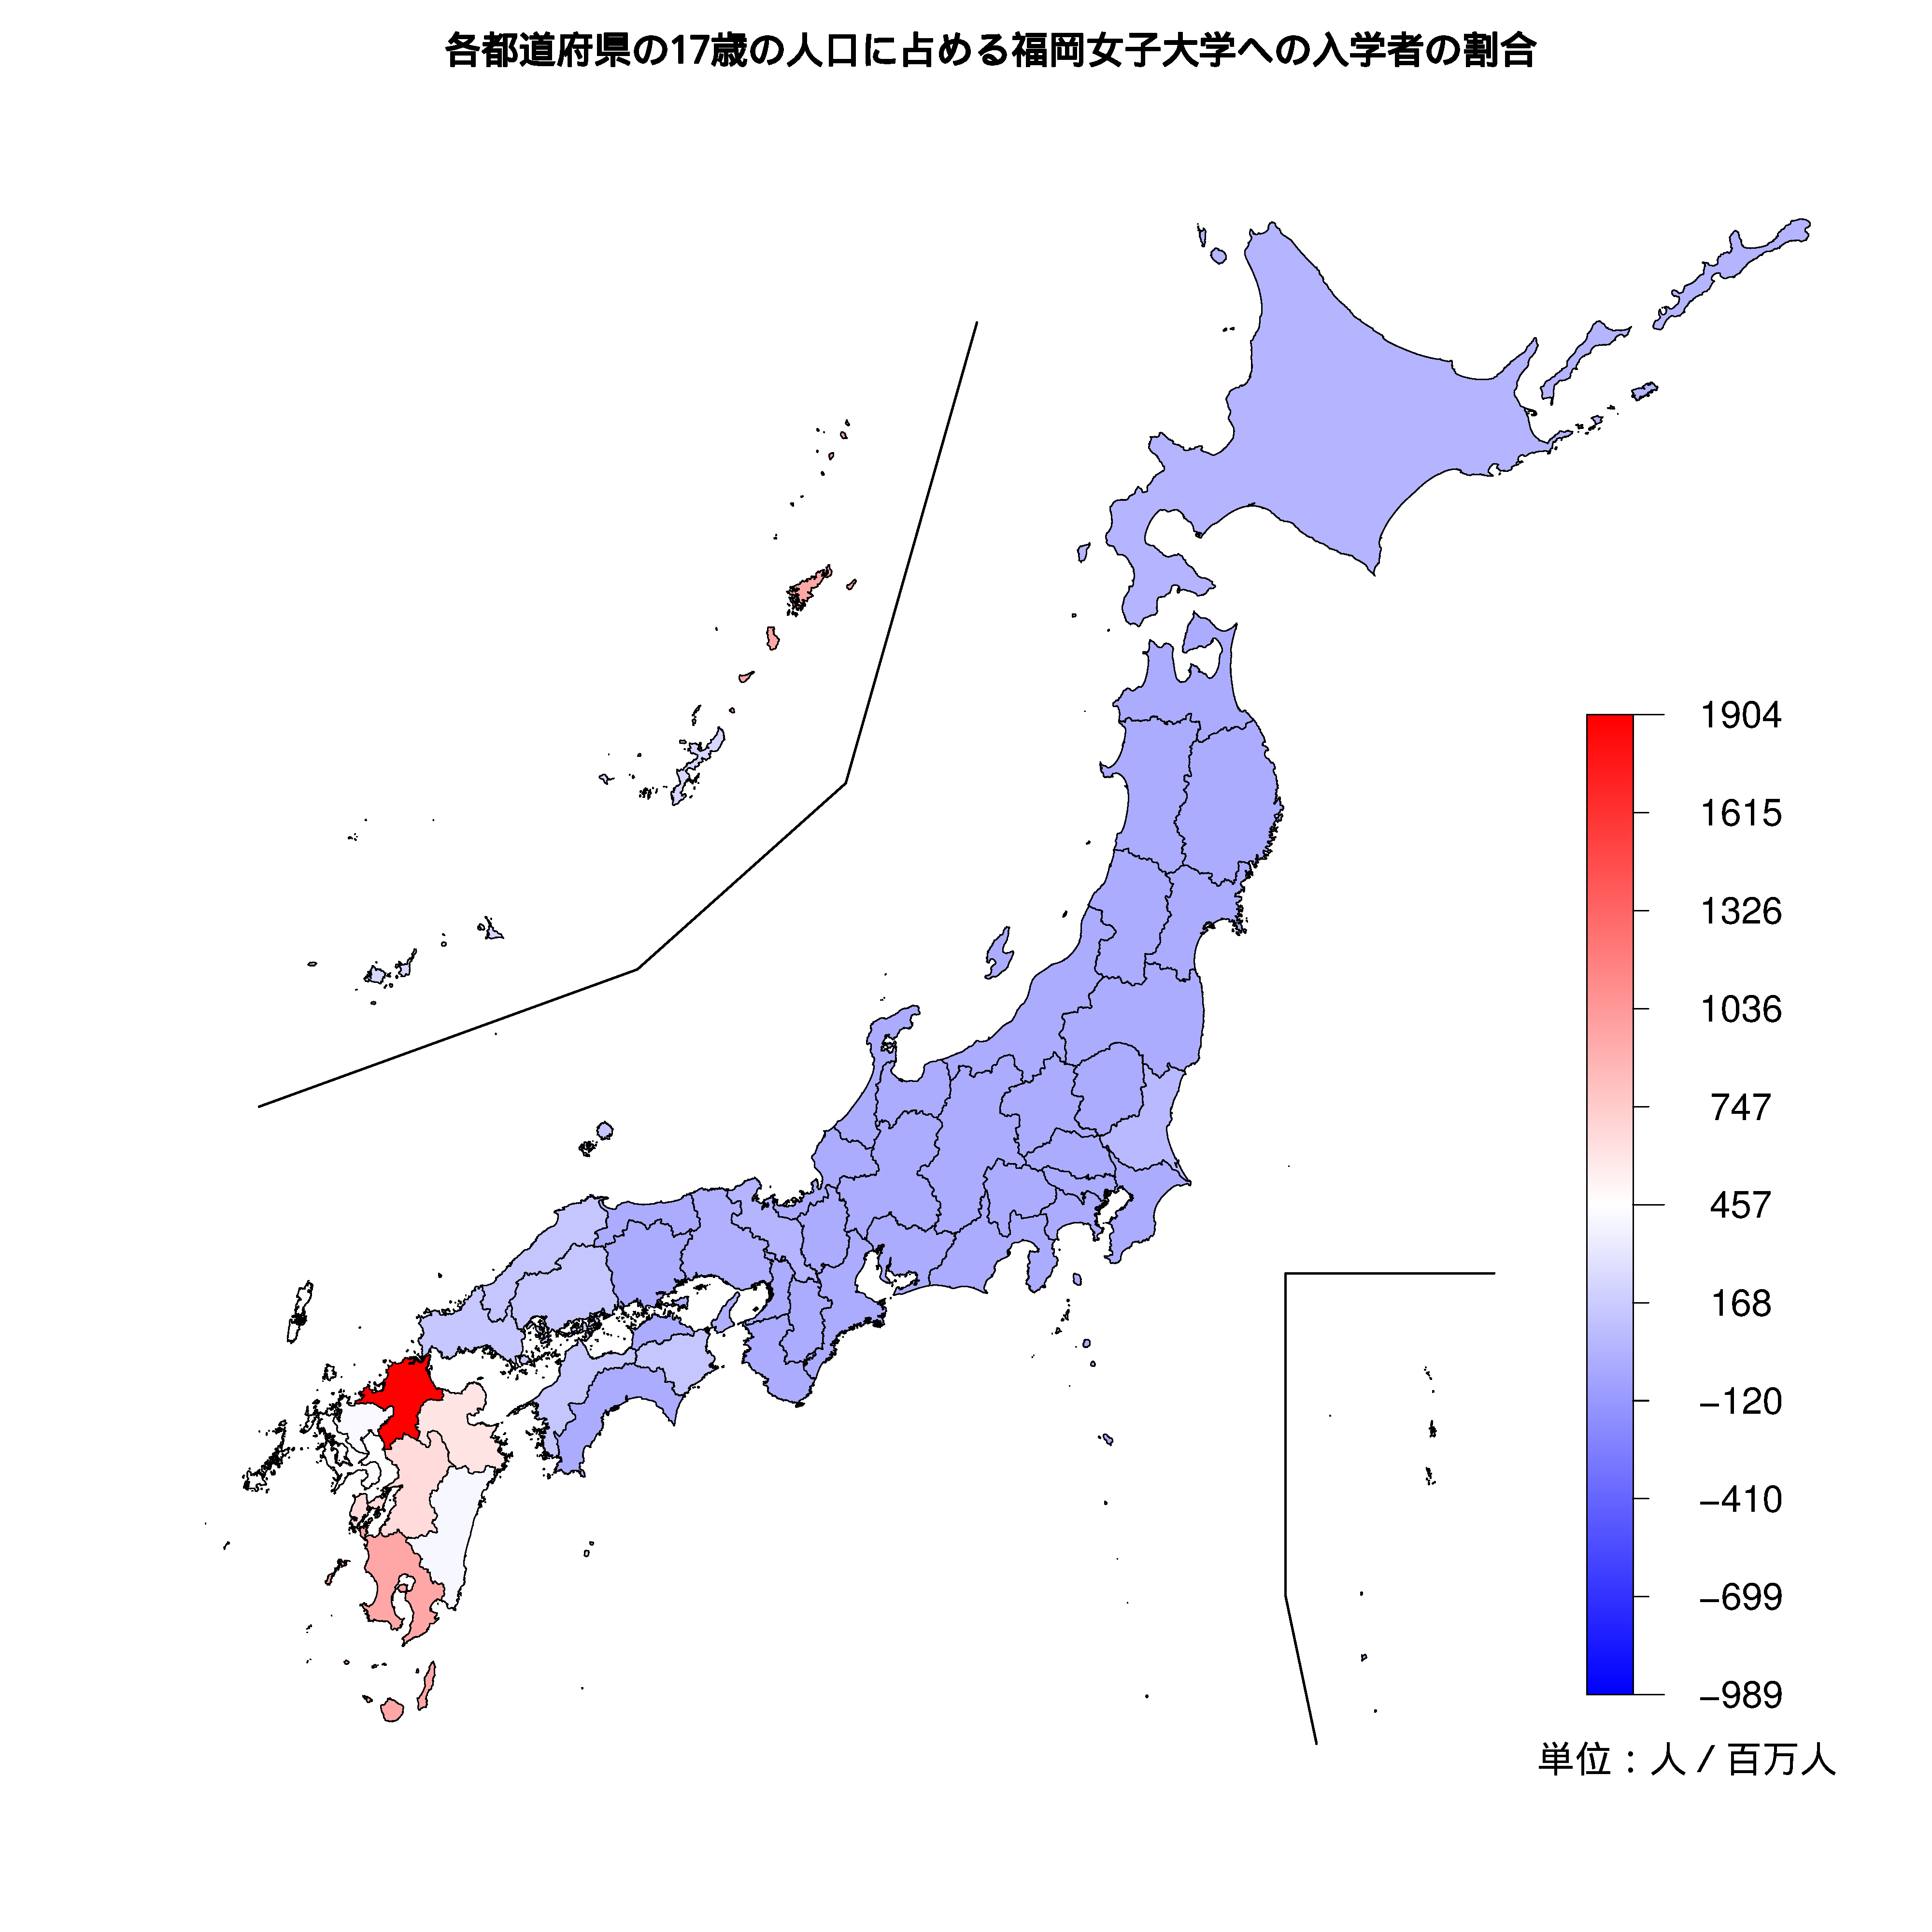 福岡女子大学への入学者が多い都道府県の色分け地図